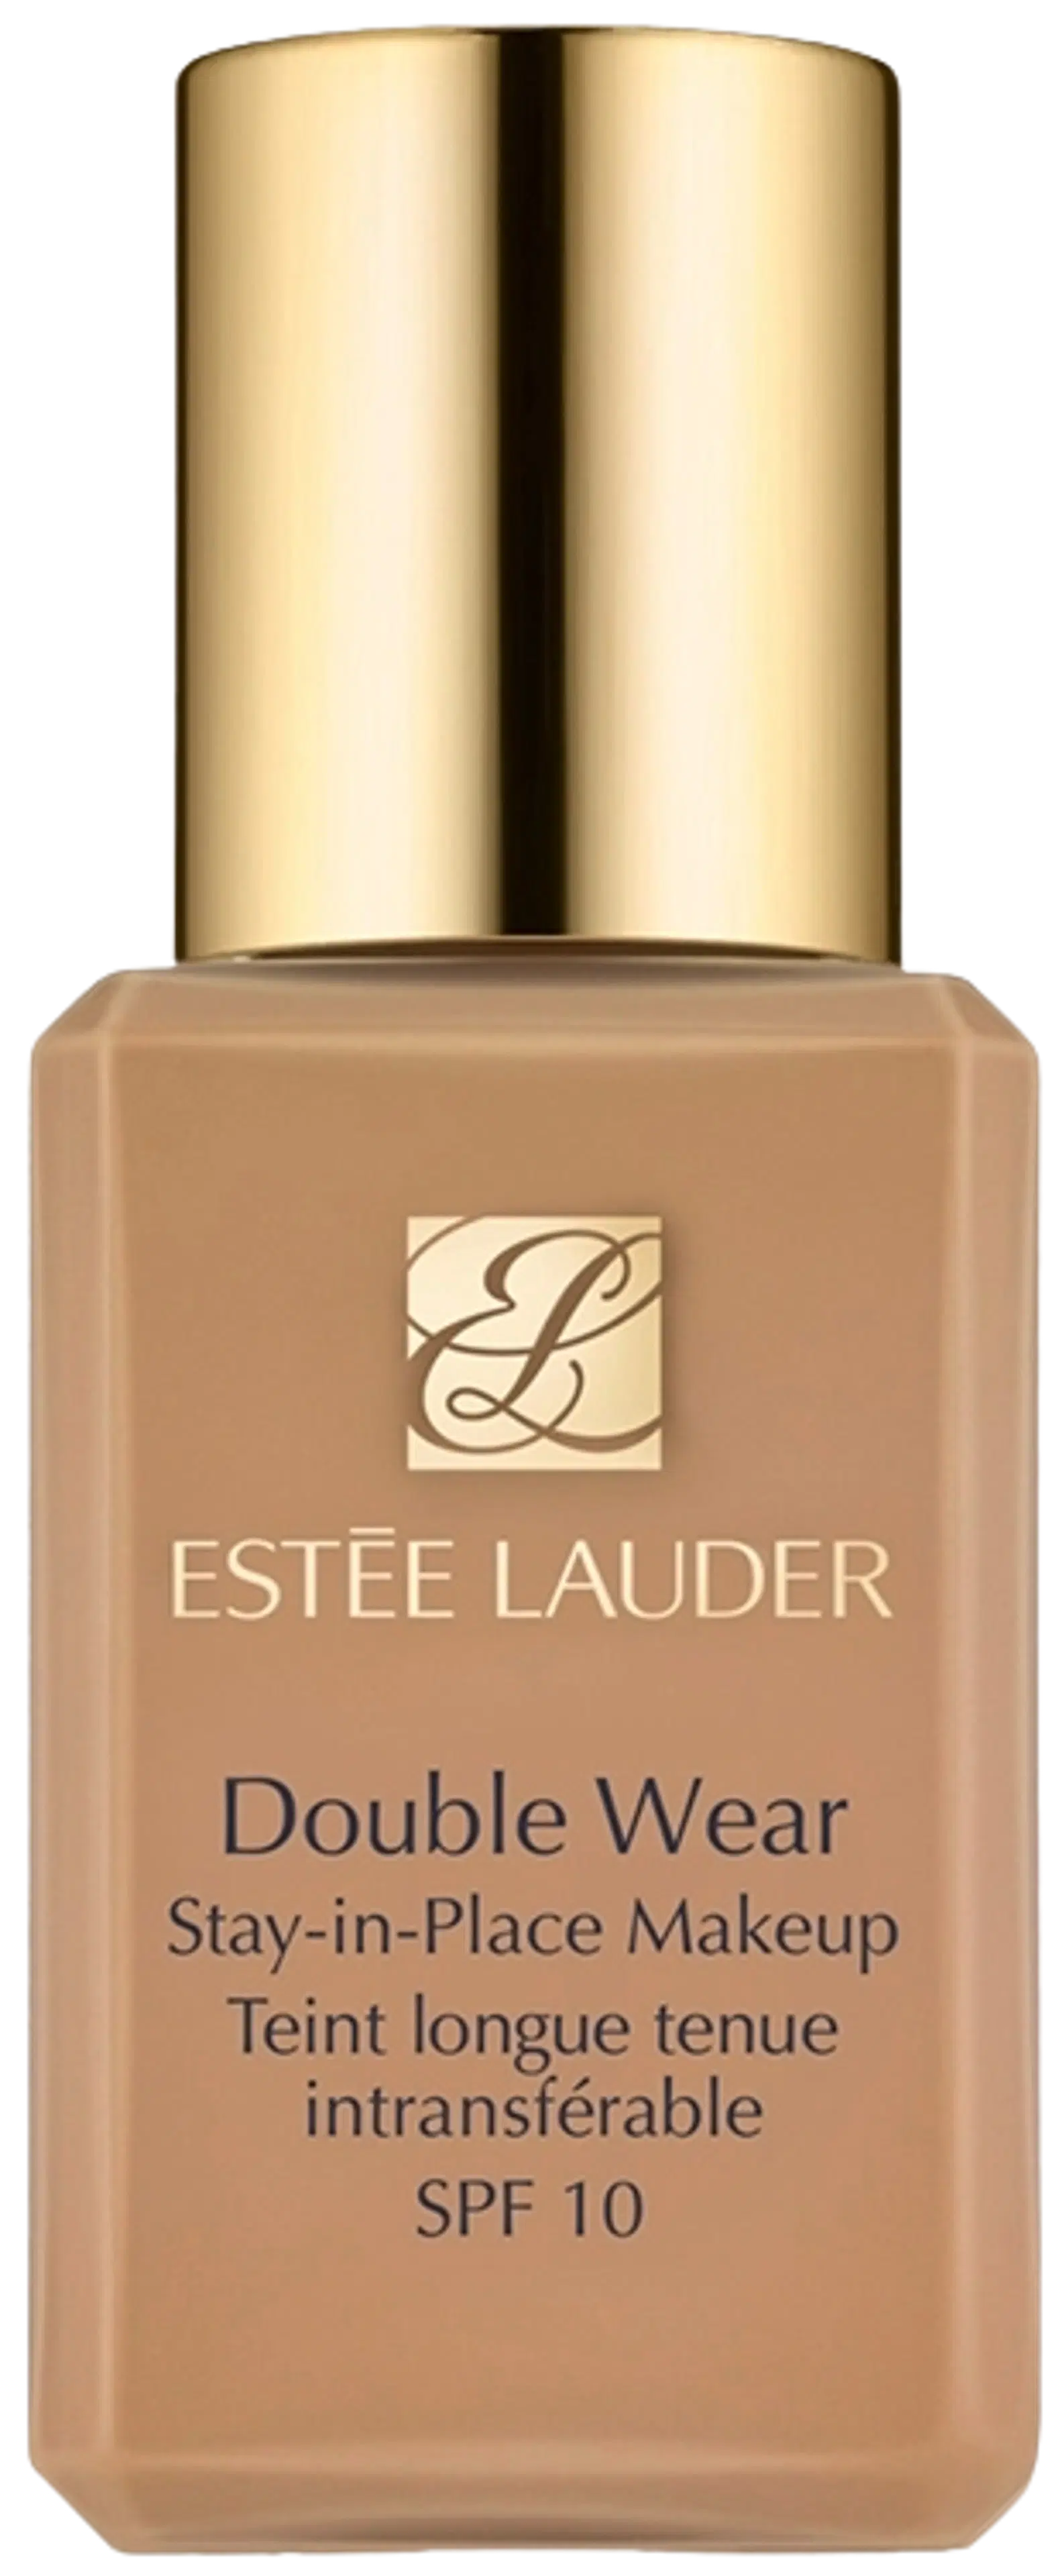 Estée Lauder Double Wear Stay-in-Place Make-up SPF 10 meikkivoide 15 ml